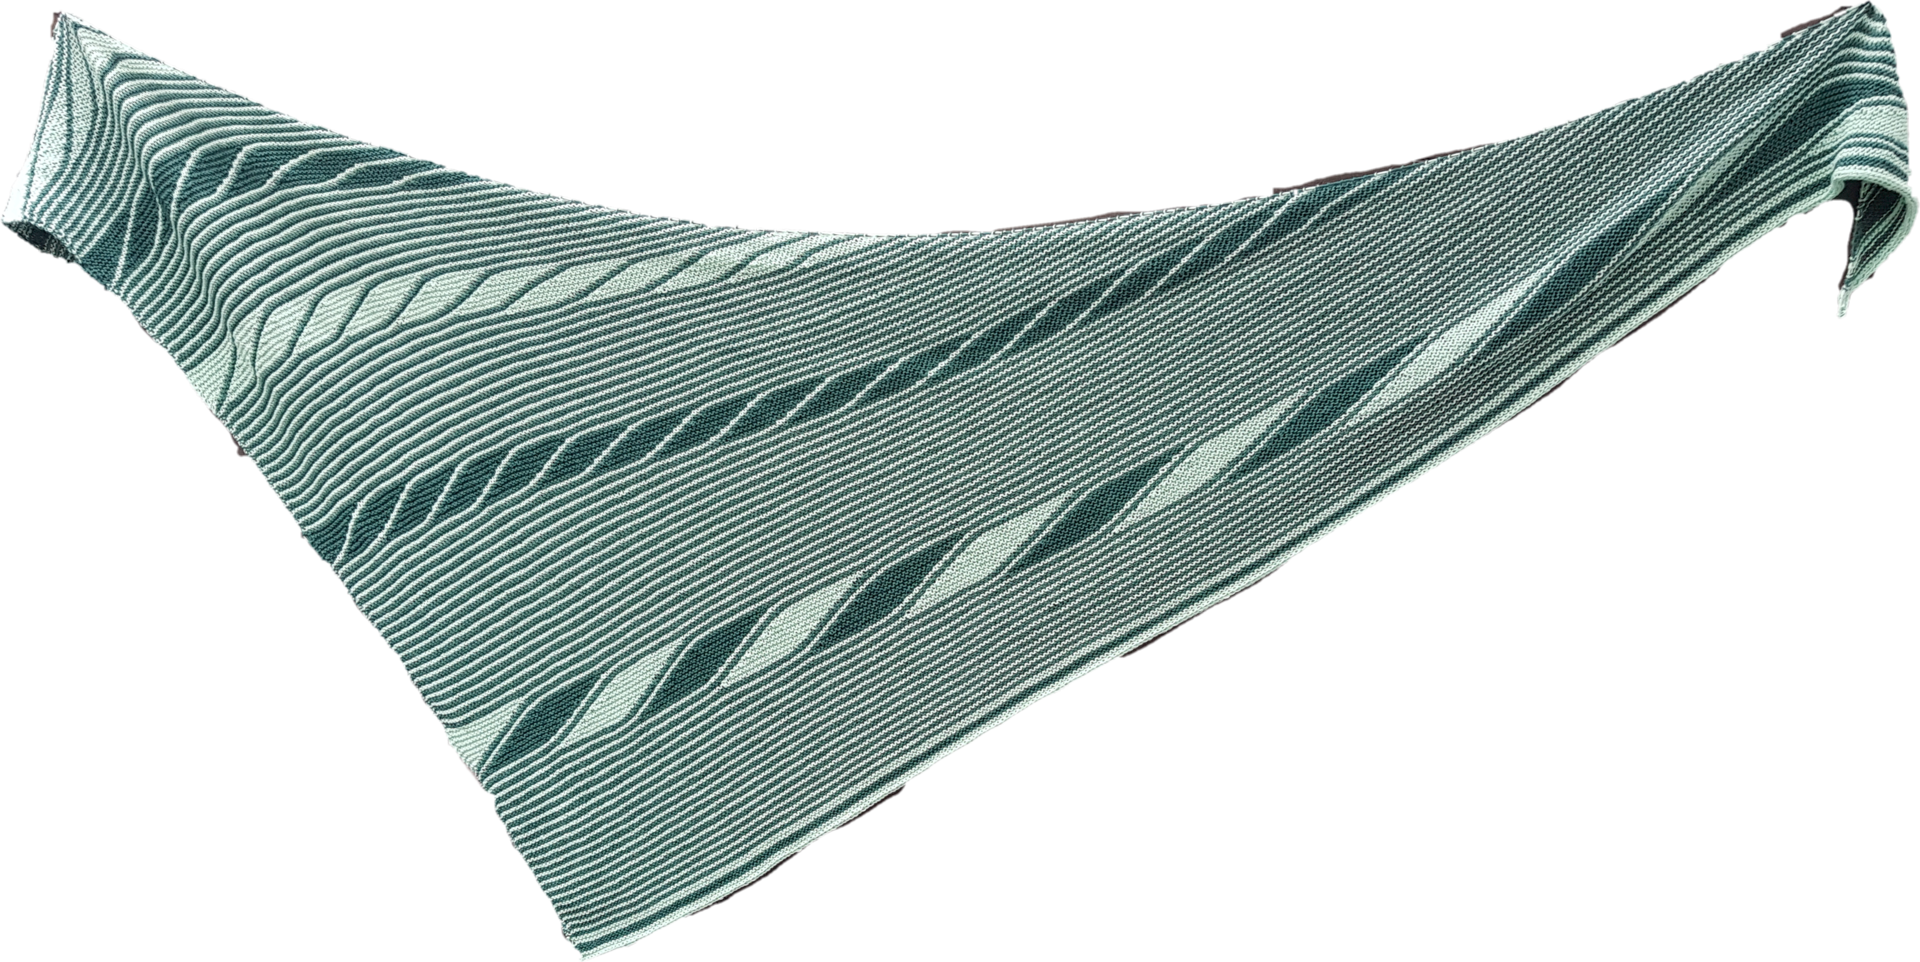 CHAIN-of-DROPS - Anleitung für ein zweifarbiges Tuch mit verkürzten Reihen